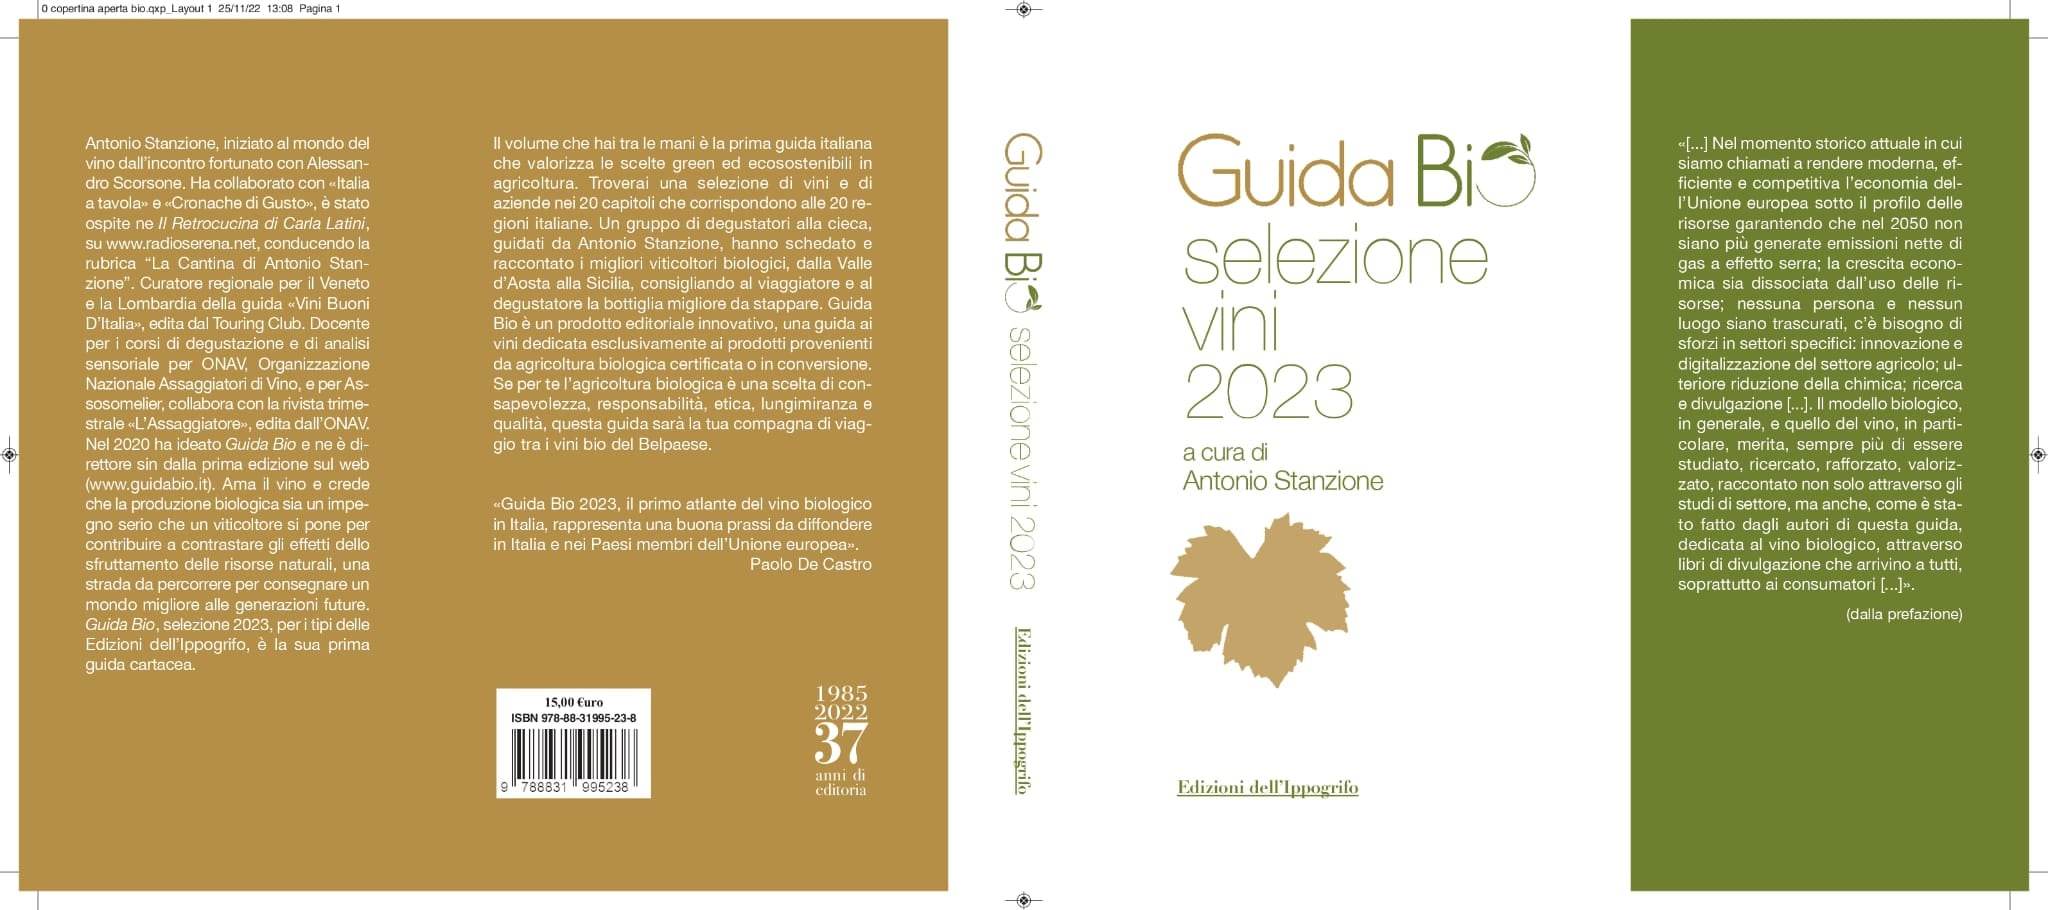 guida-bio,-selezione-vini-2023.-il-14-gennaio-a-salerno